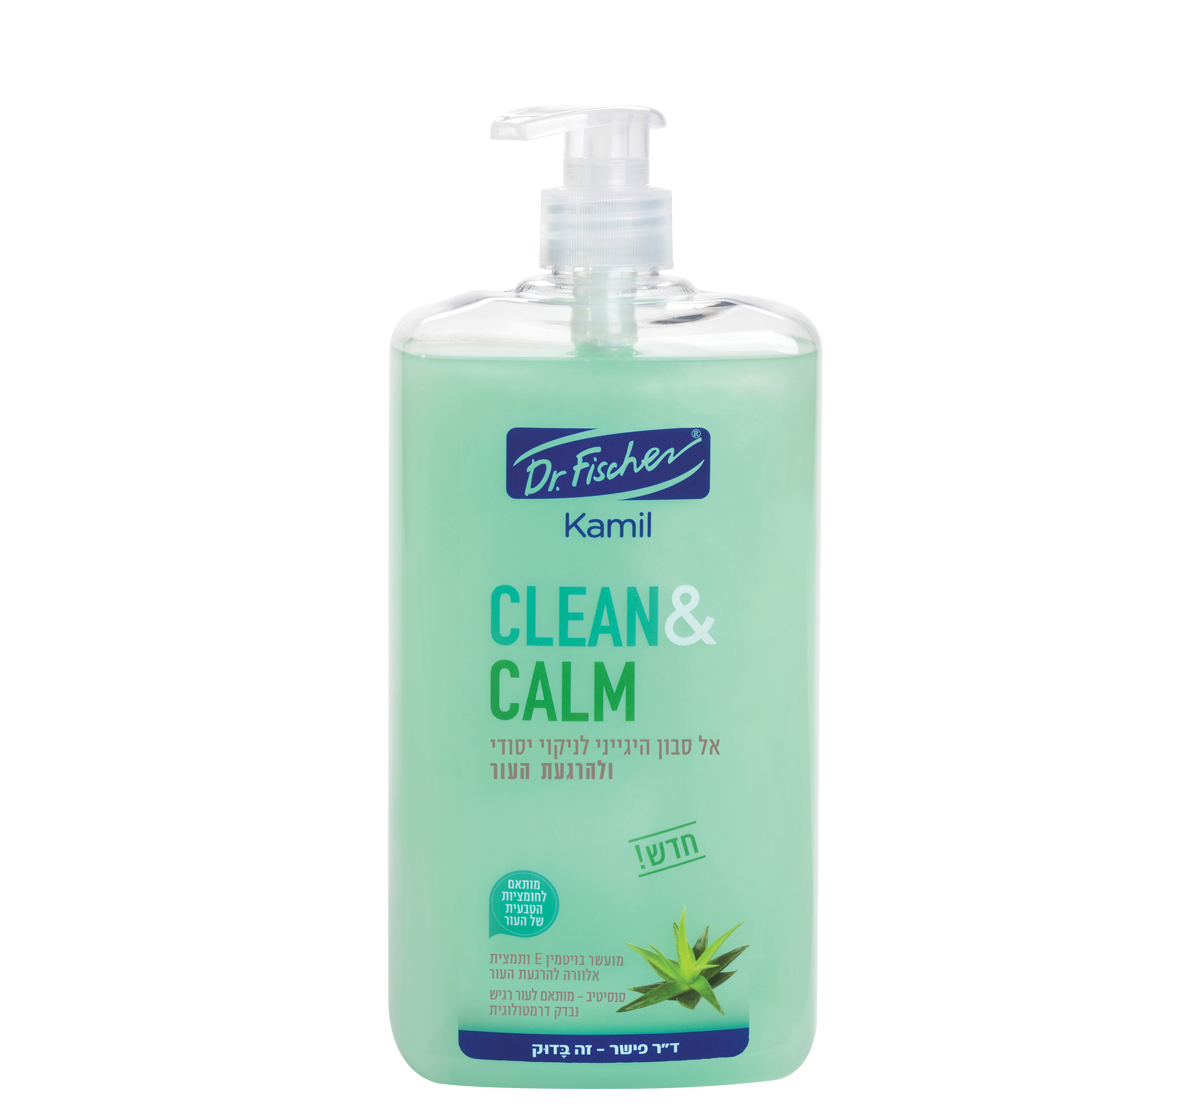 kamil_clean_&_calm-green_al_sabon-1184x1104